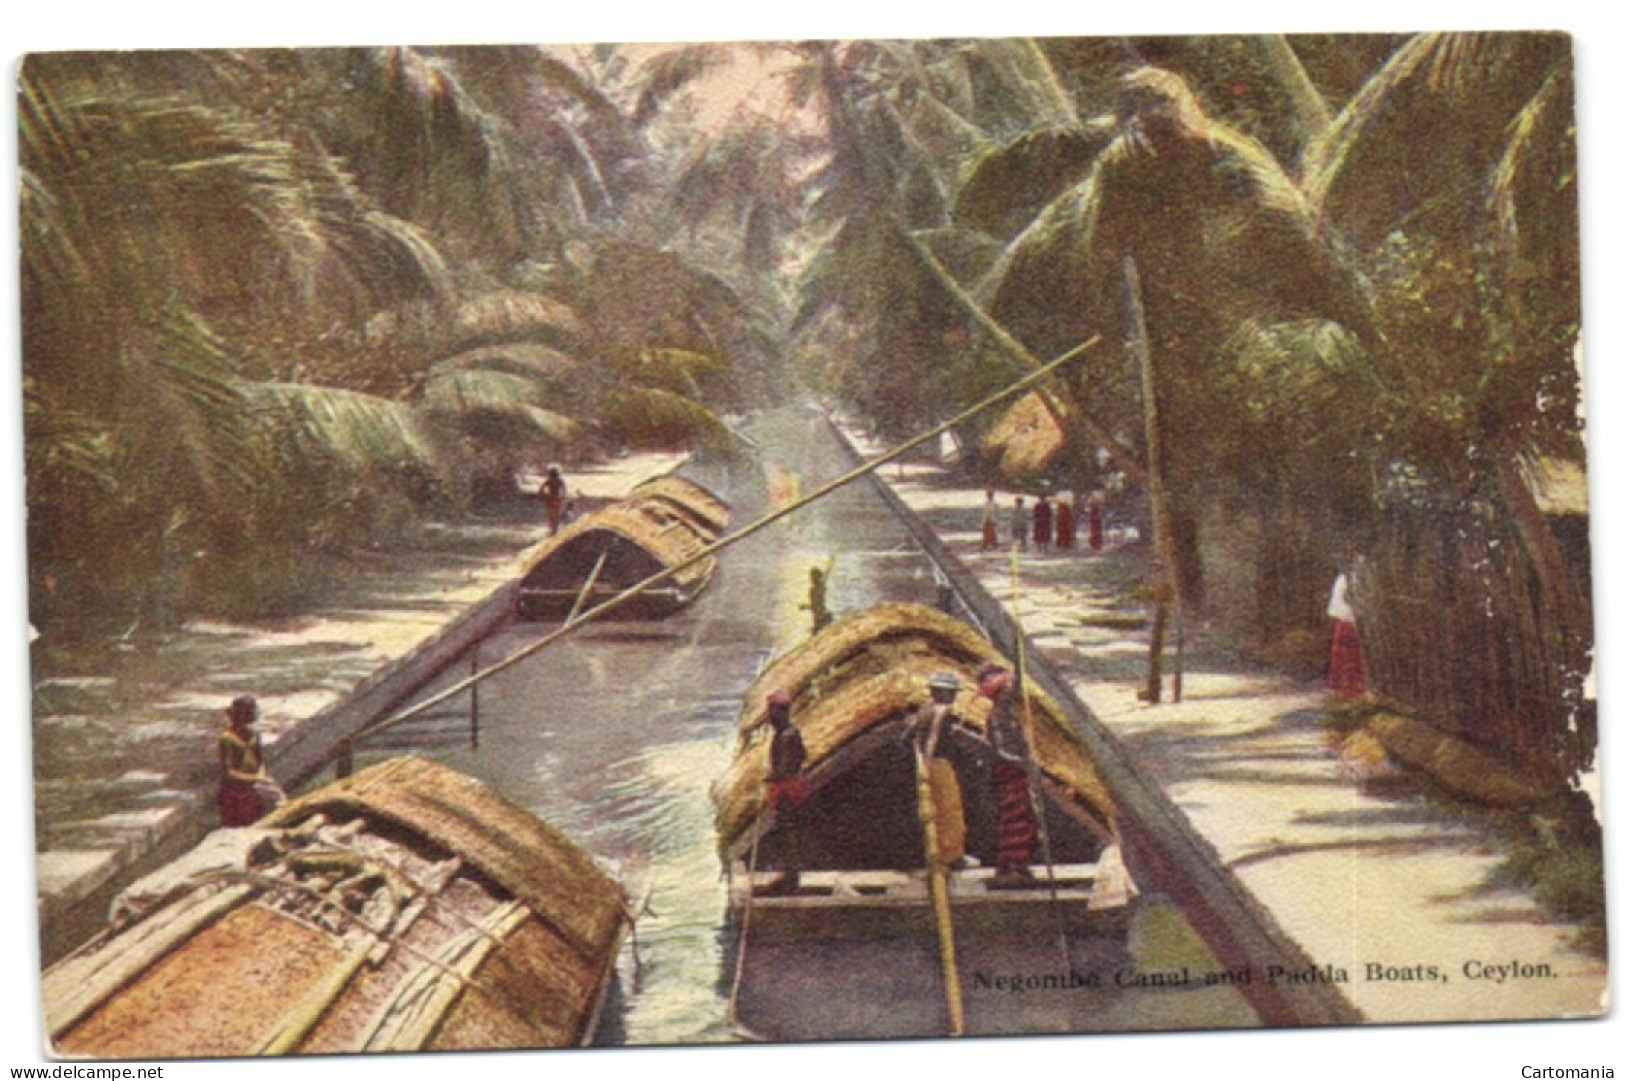 Negombo Canal And Padda Boats - Ceylon - Sri Lanka (Ceylon)